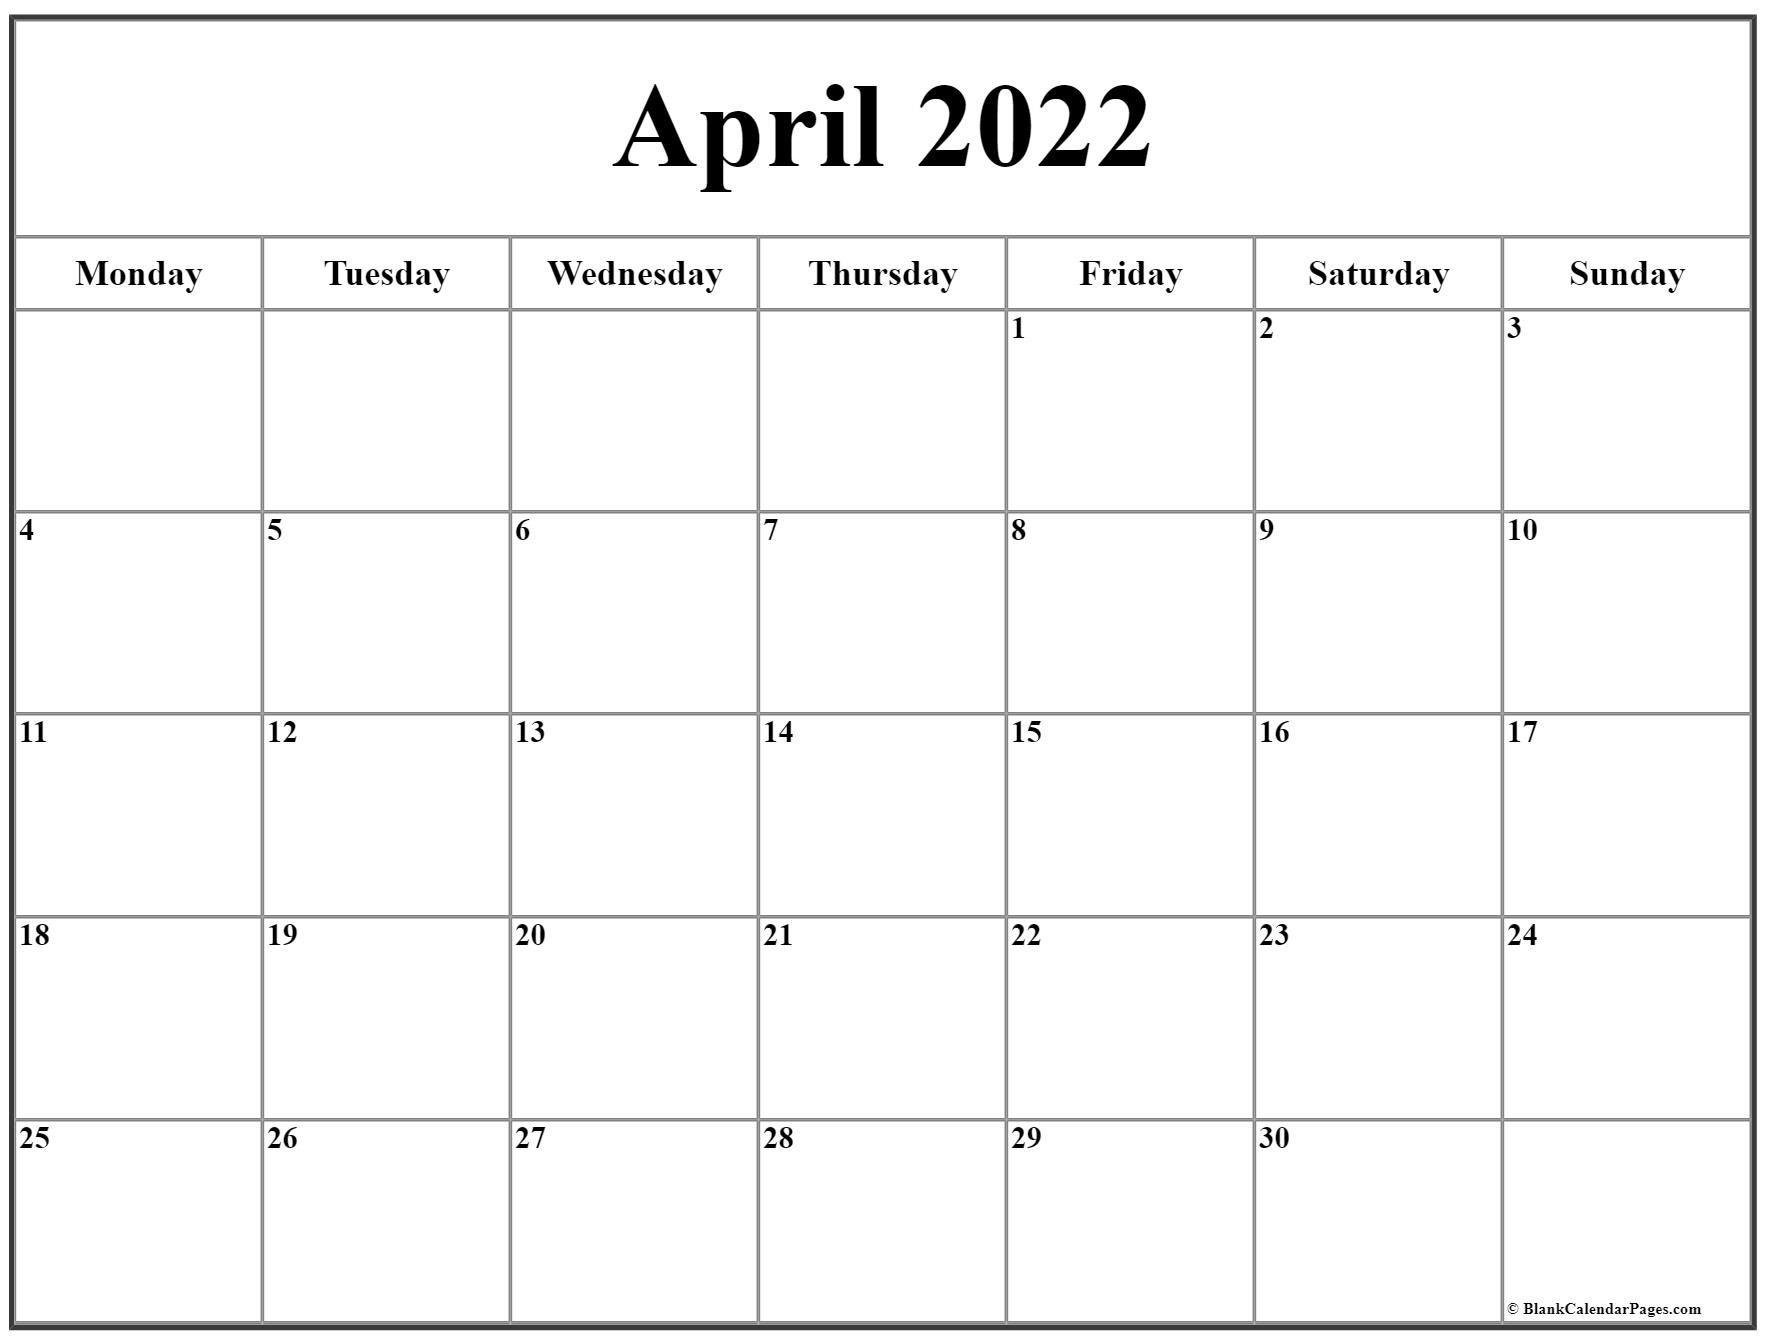 April 2022 Monday Calendar | Monday To Sunday